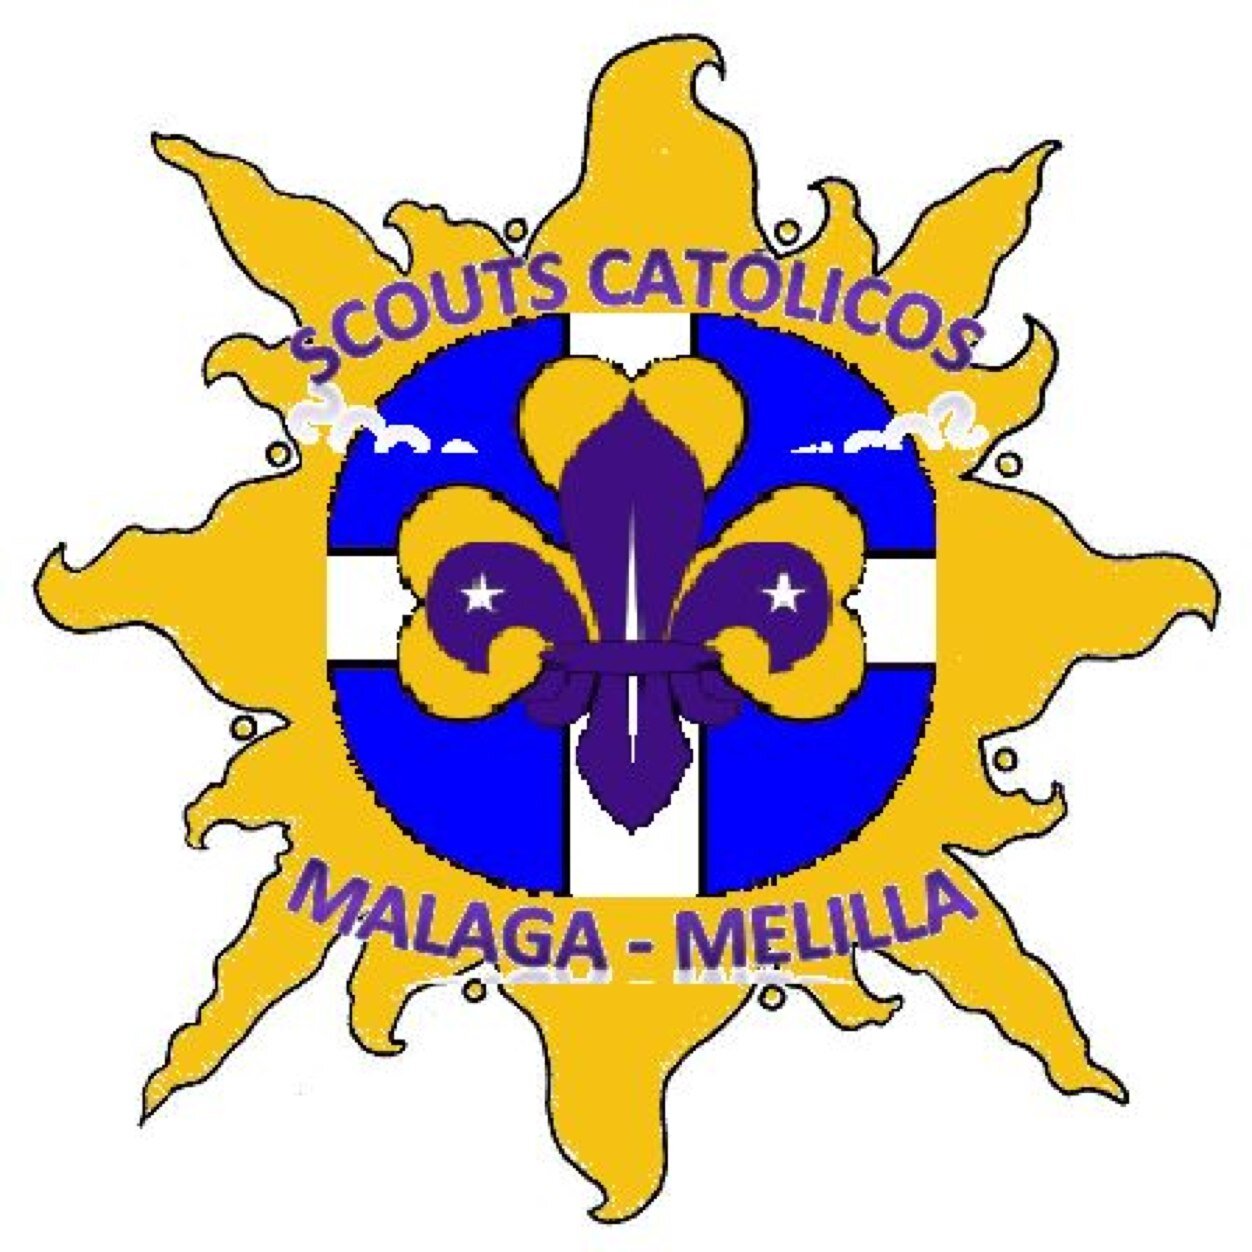 Asociación Diocesana SCOUTS Católicos de Málaga-Melilla